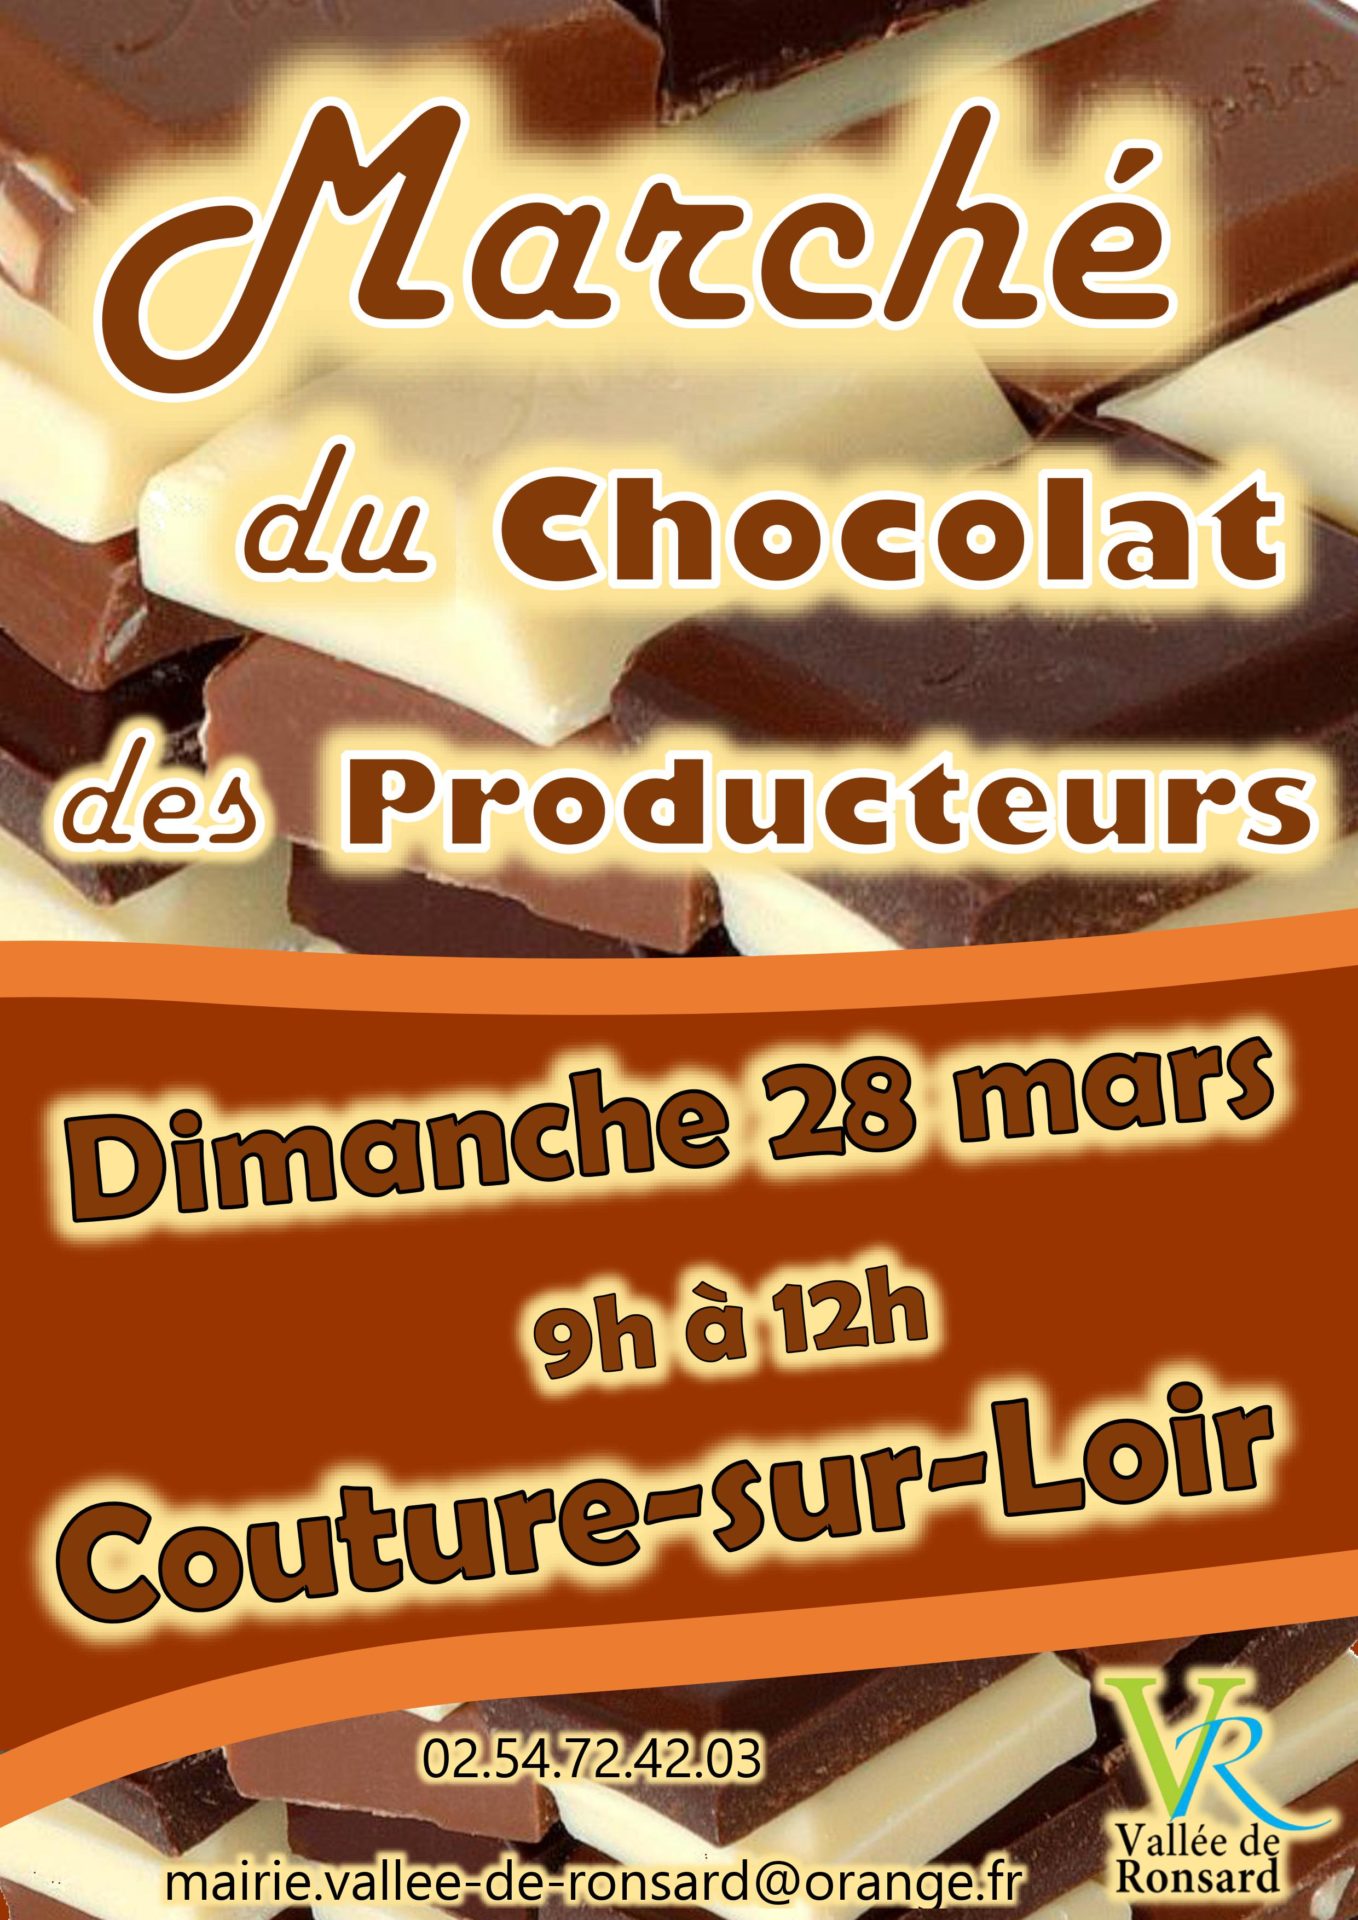 Marché du chocolat à Couture-sur-Loire Dimanche 28 Mars de 9h à 12h avec Producteurs et Artisans